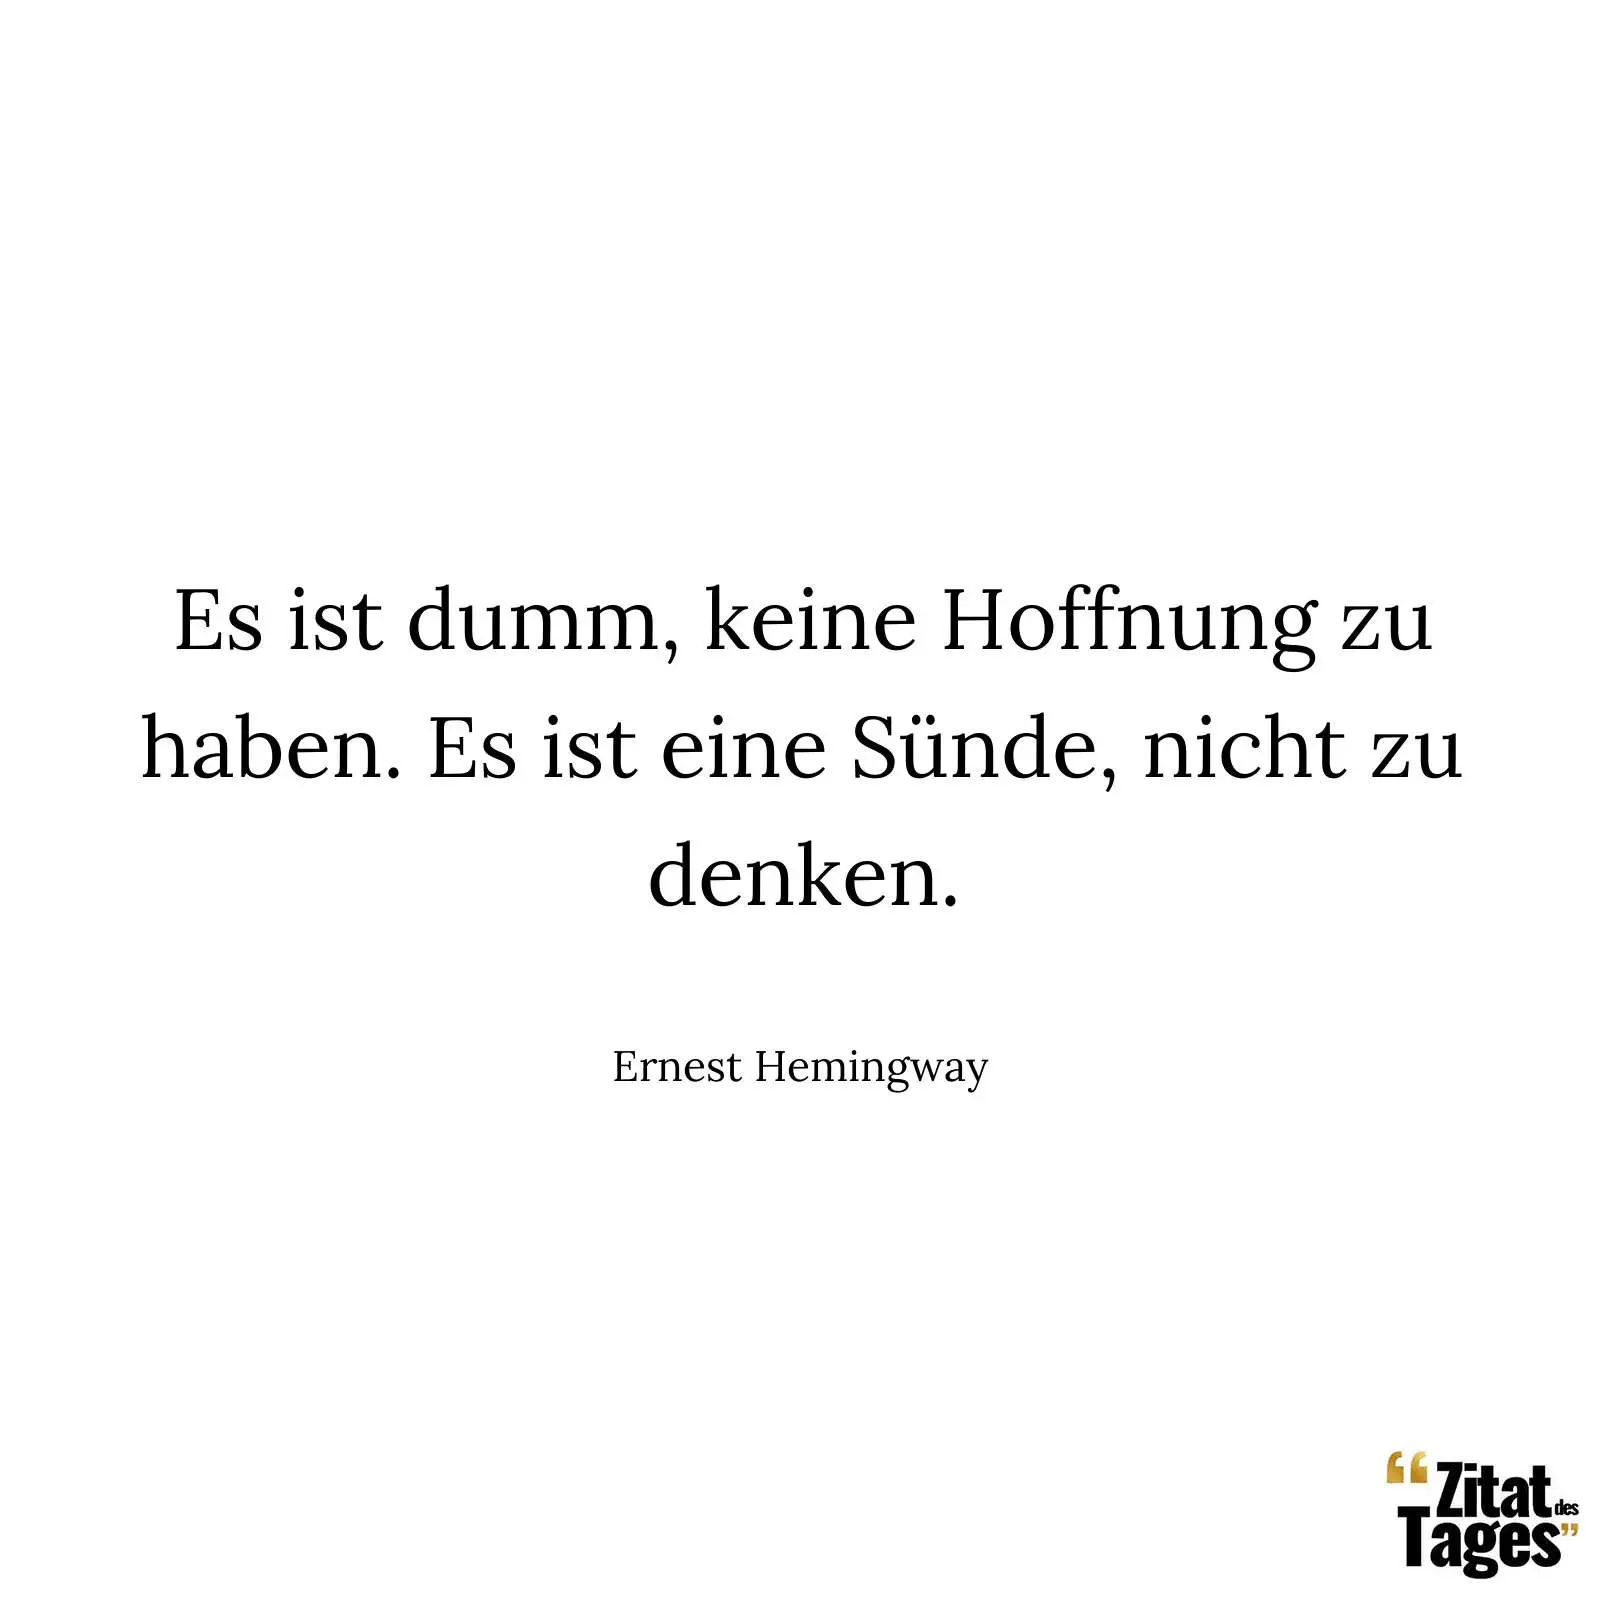 Es ist dumm, keine Hoffnung zu haben. Es ist eine Sünde, nicht zu denken. - Ernest Hemingway